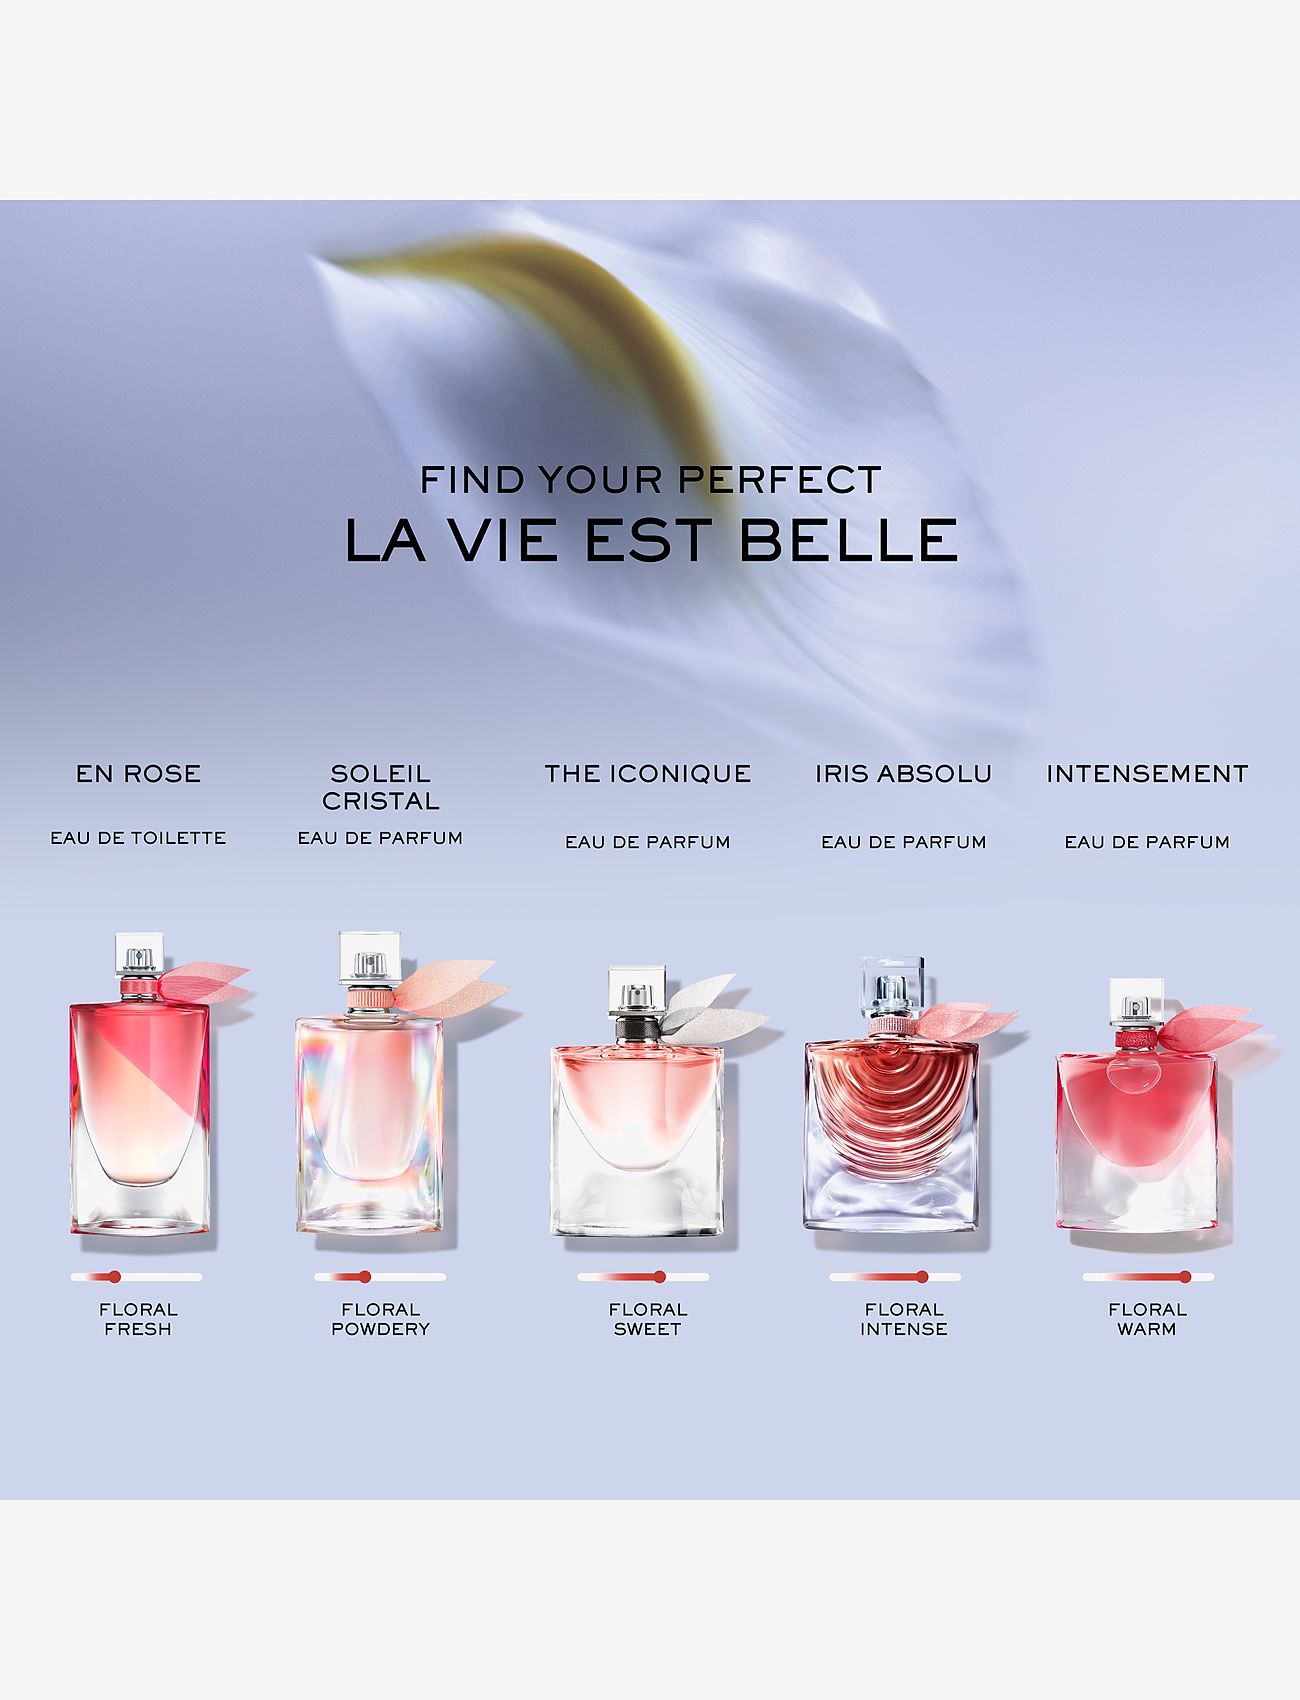 Lancôme - La Vie est Belle en Rose Eau de Toilette - eau de toilette - clear - 1